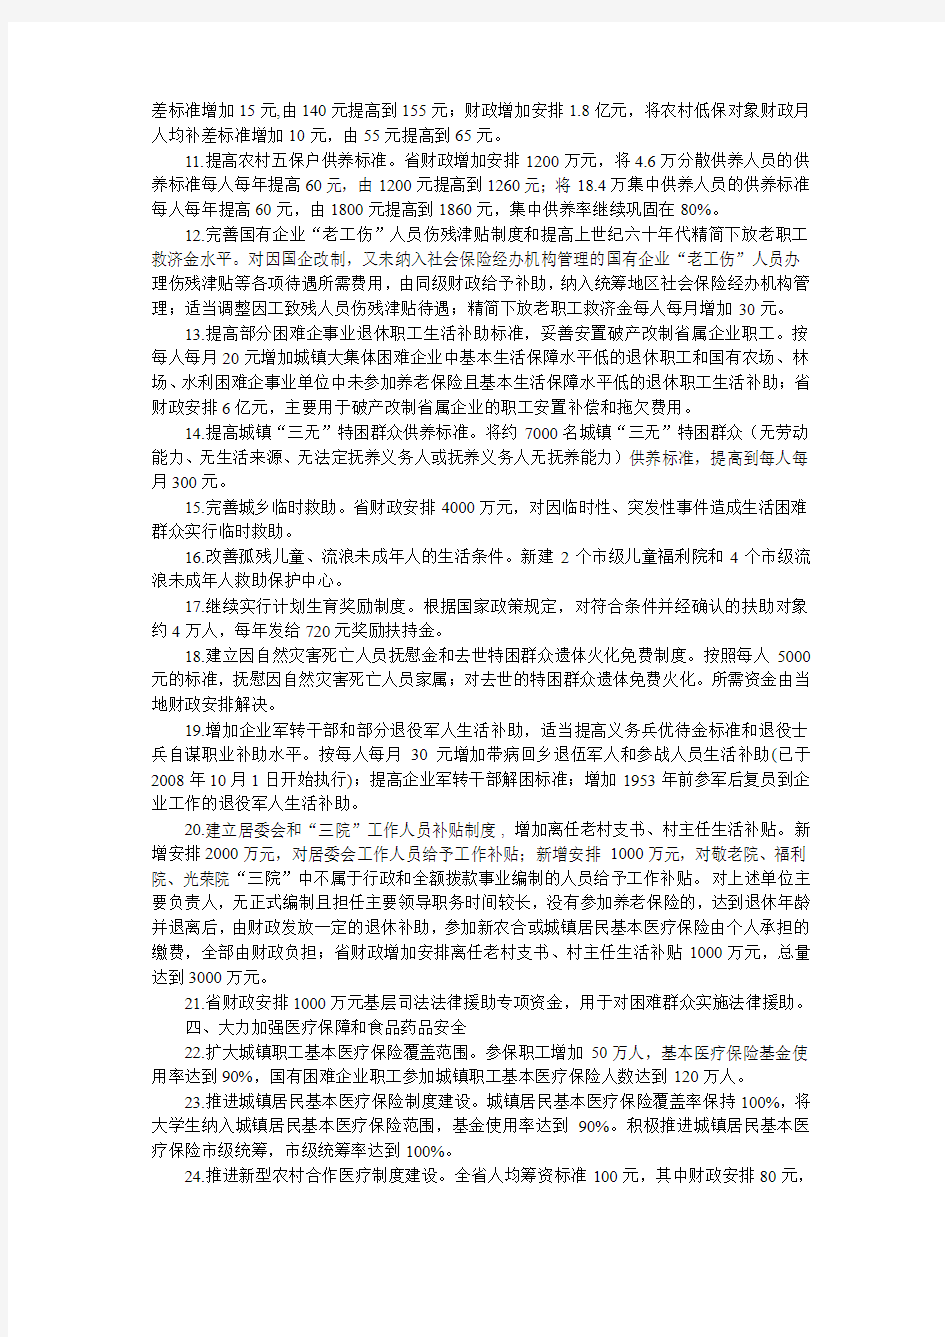 江西省人民政府关于印发2009年民生工程安排意见的通知